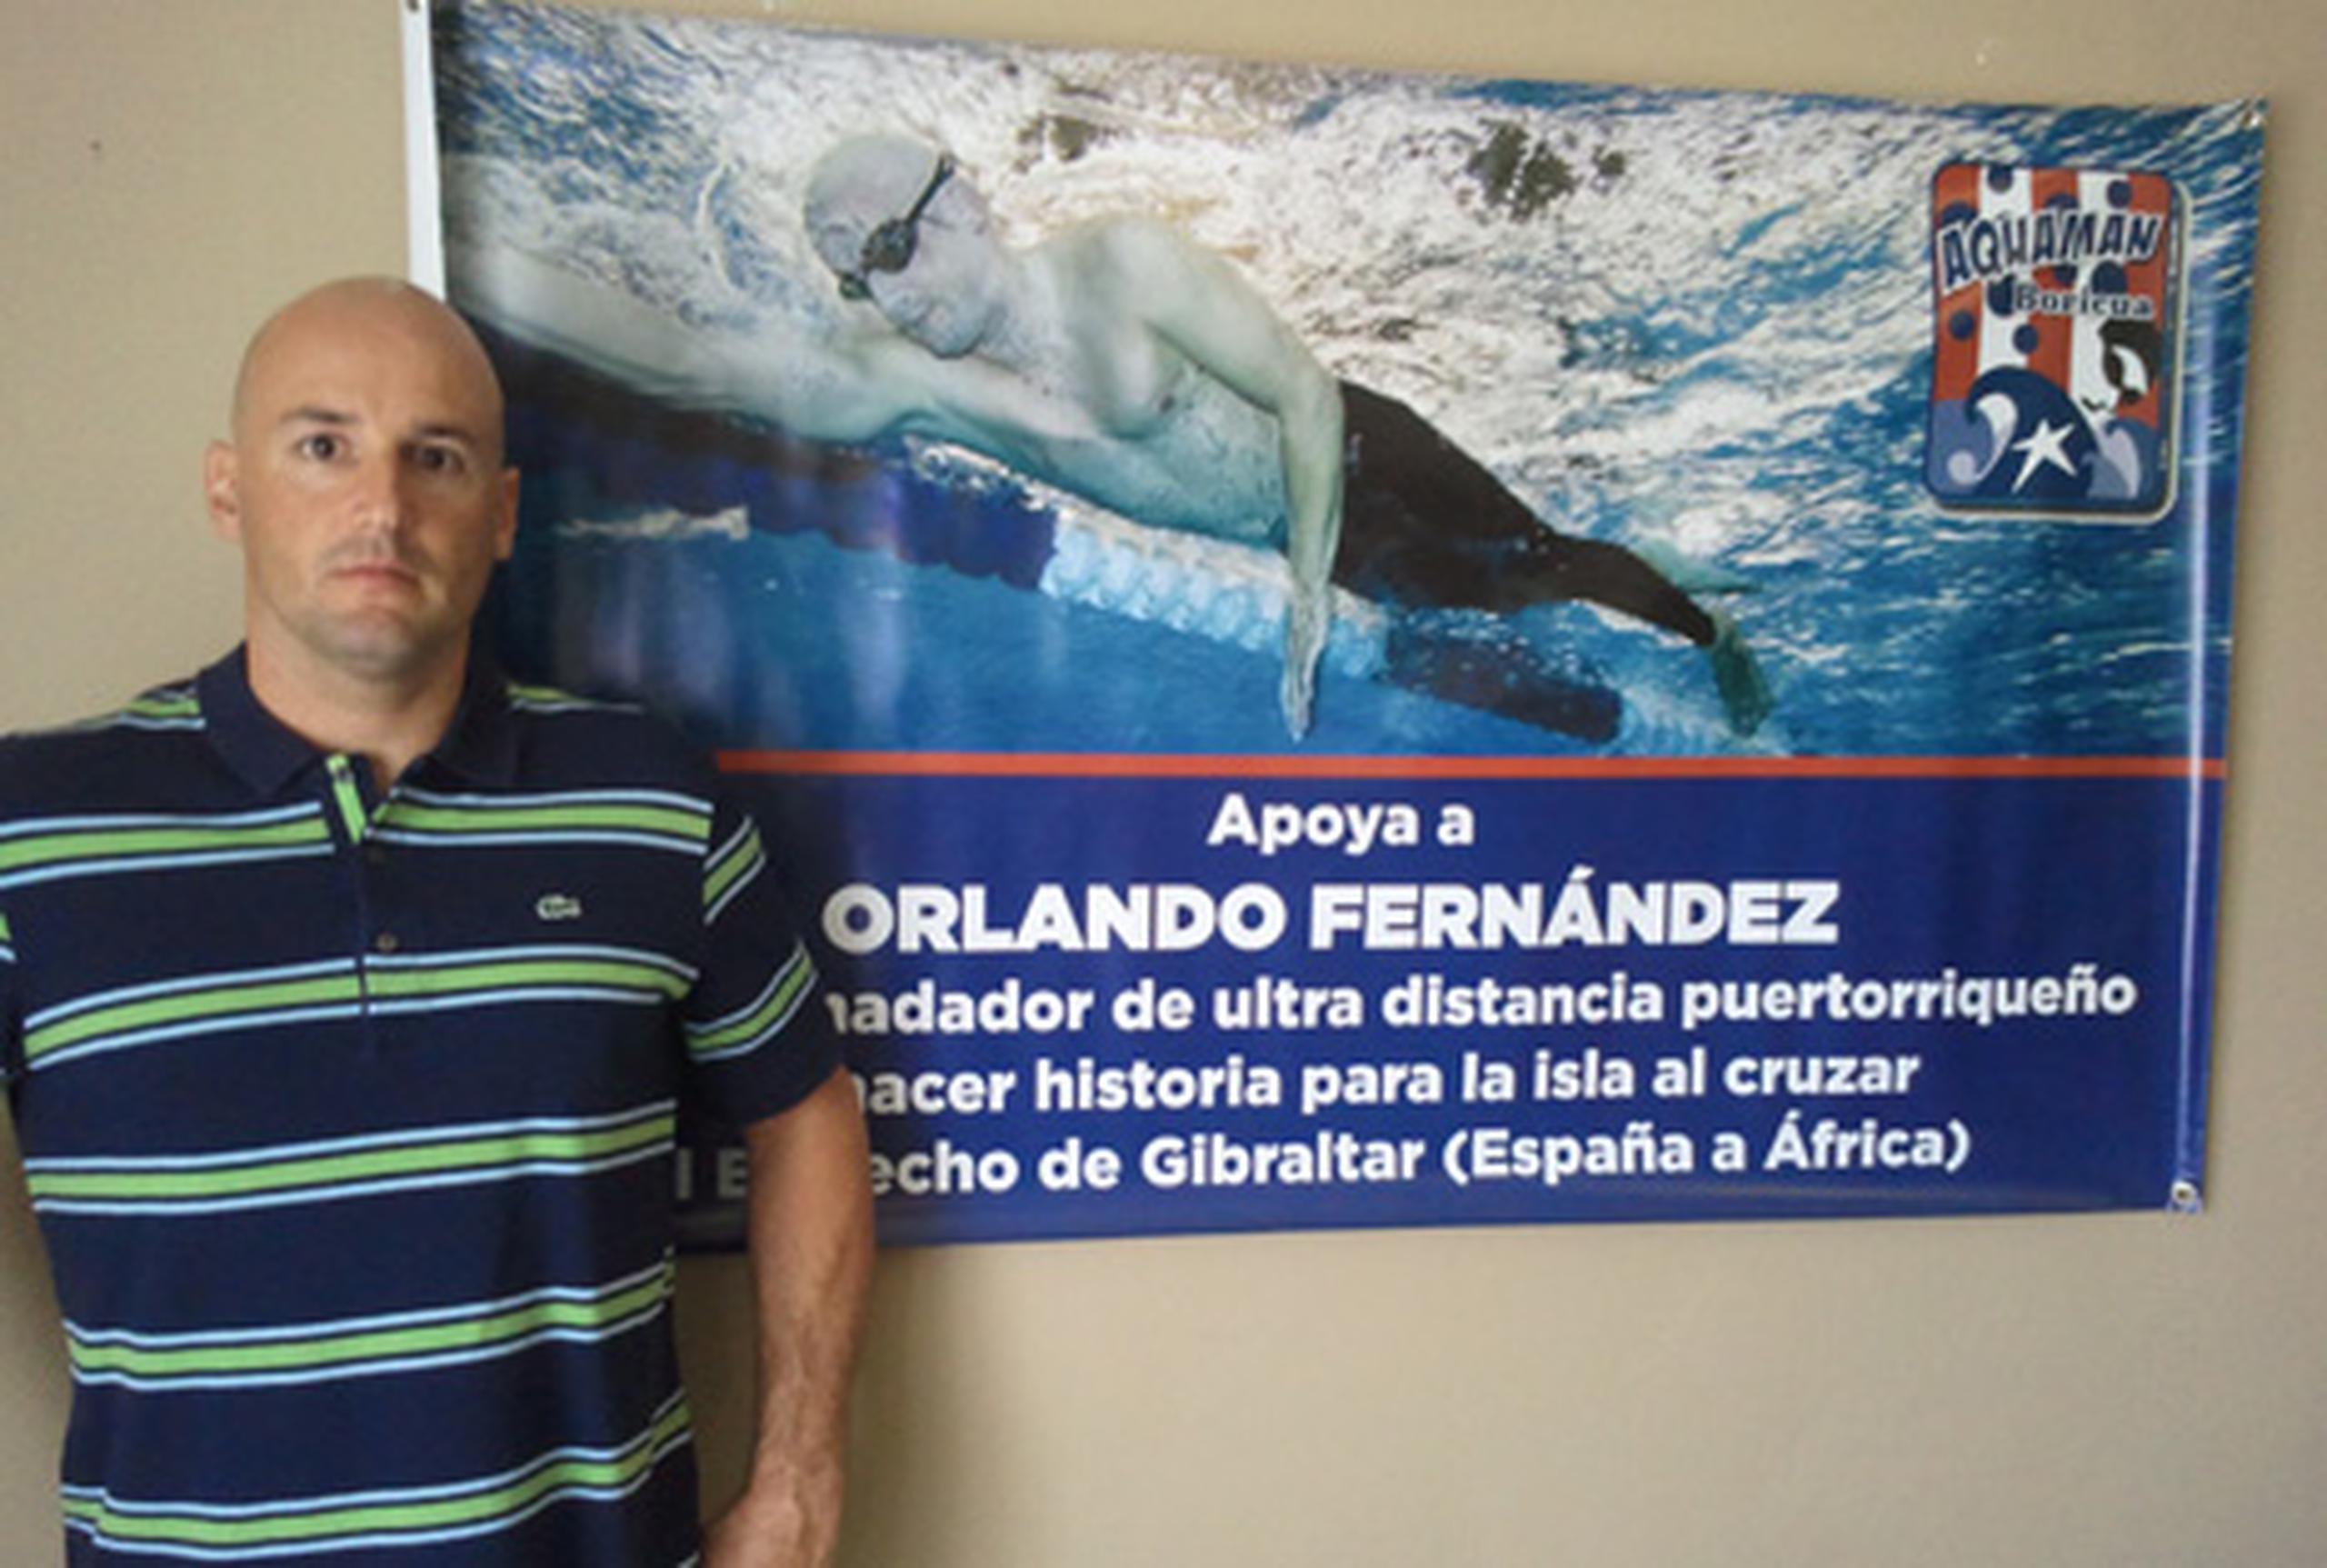 Este año el evento se le dedica a Orlando Fernández, alias “Aquaman boricua”, quien ha sido el único puertorriqueño en cruzar el Estrecho de Gibraltar. (Suministrada)